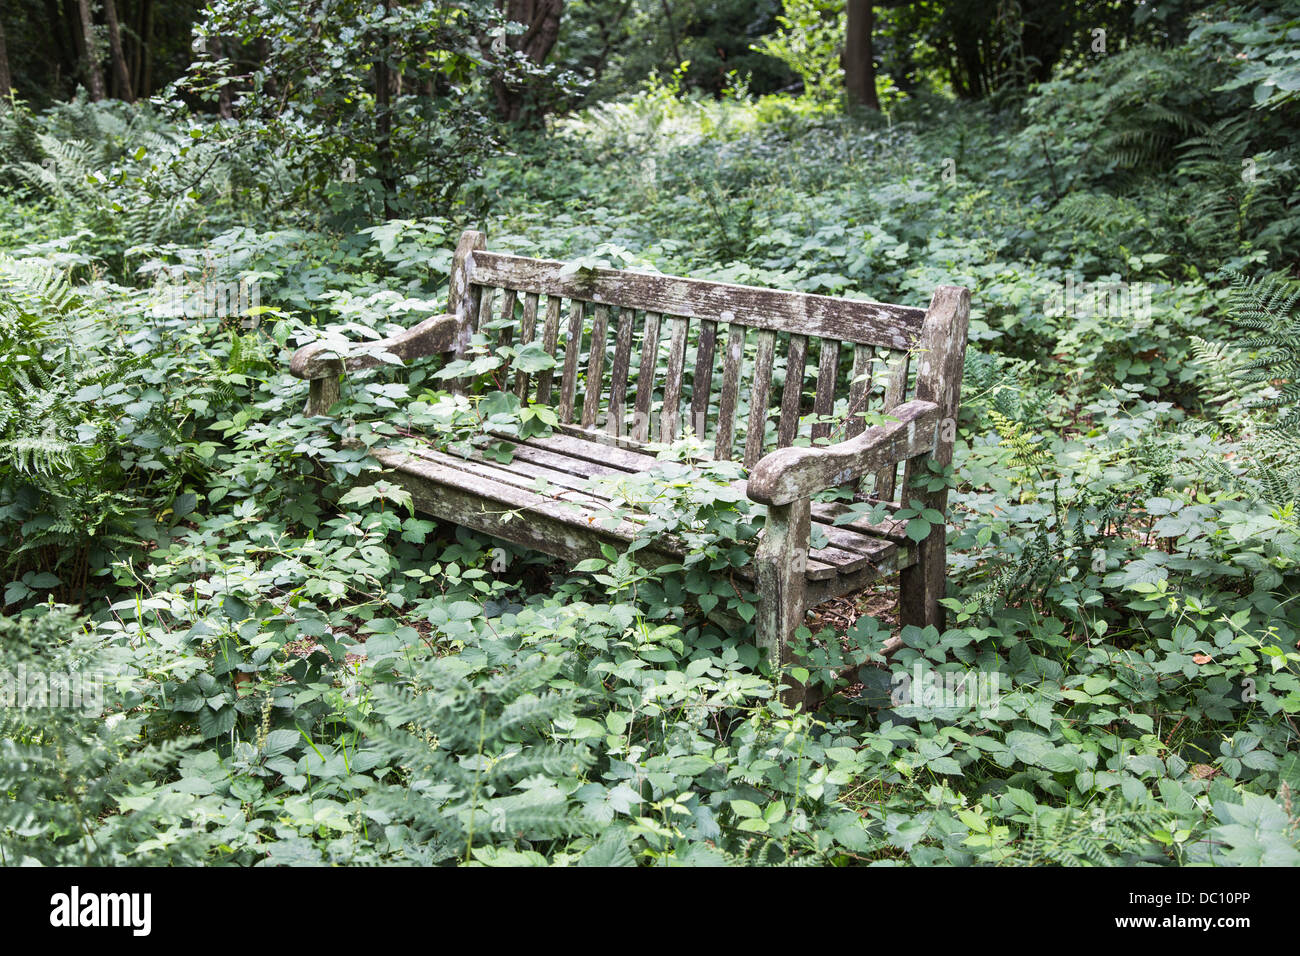 Ricoperta in legno rustico sedile unico coperto di rovi e altre piante selvatiche Foto Stock